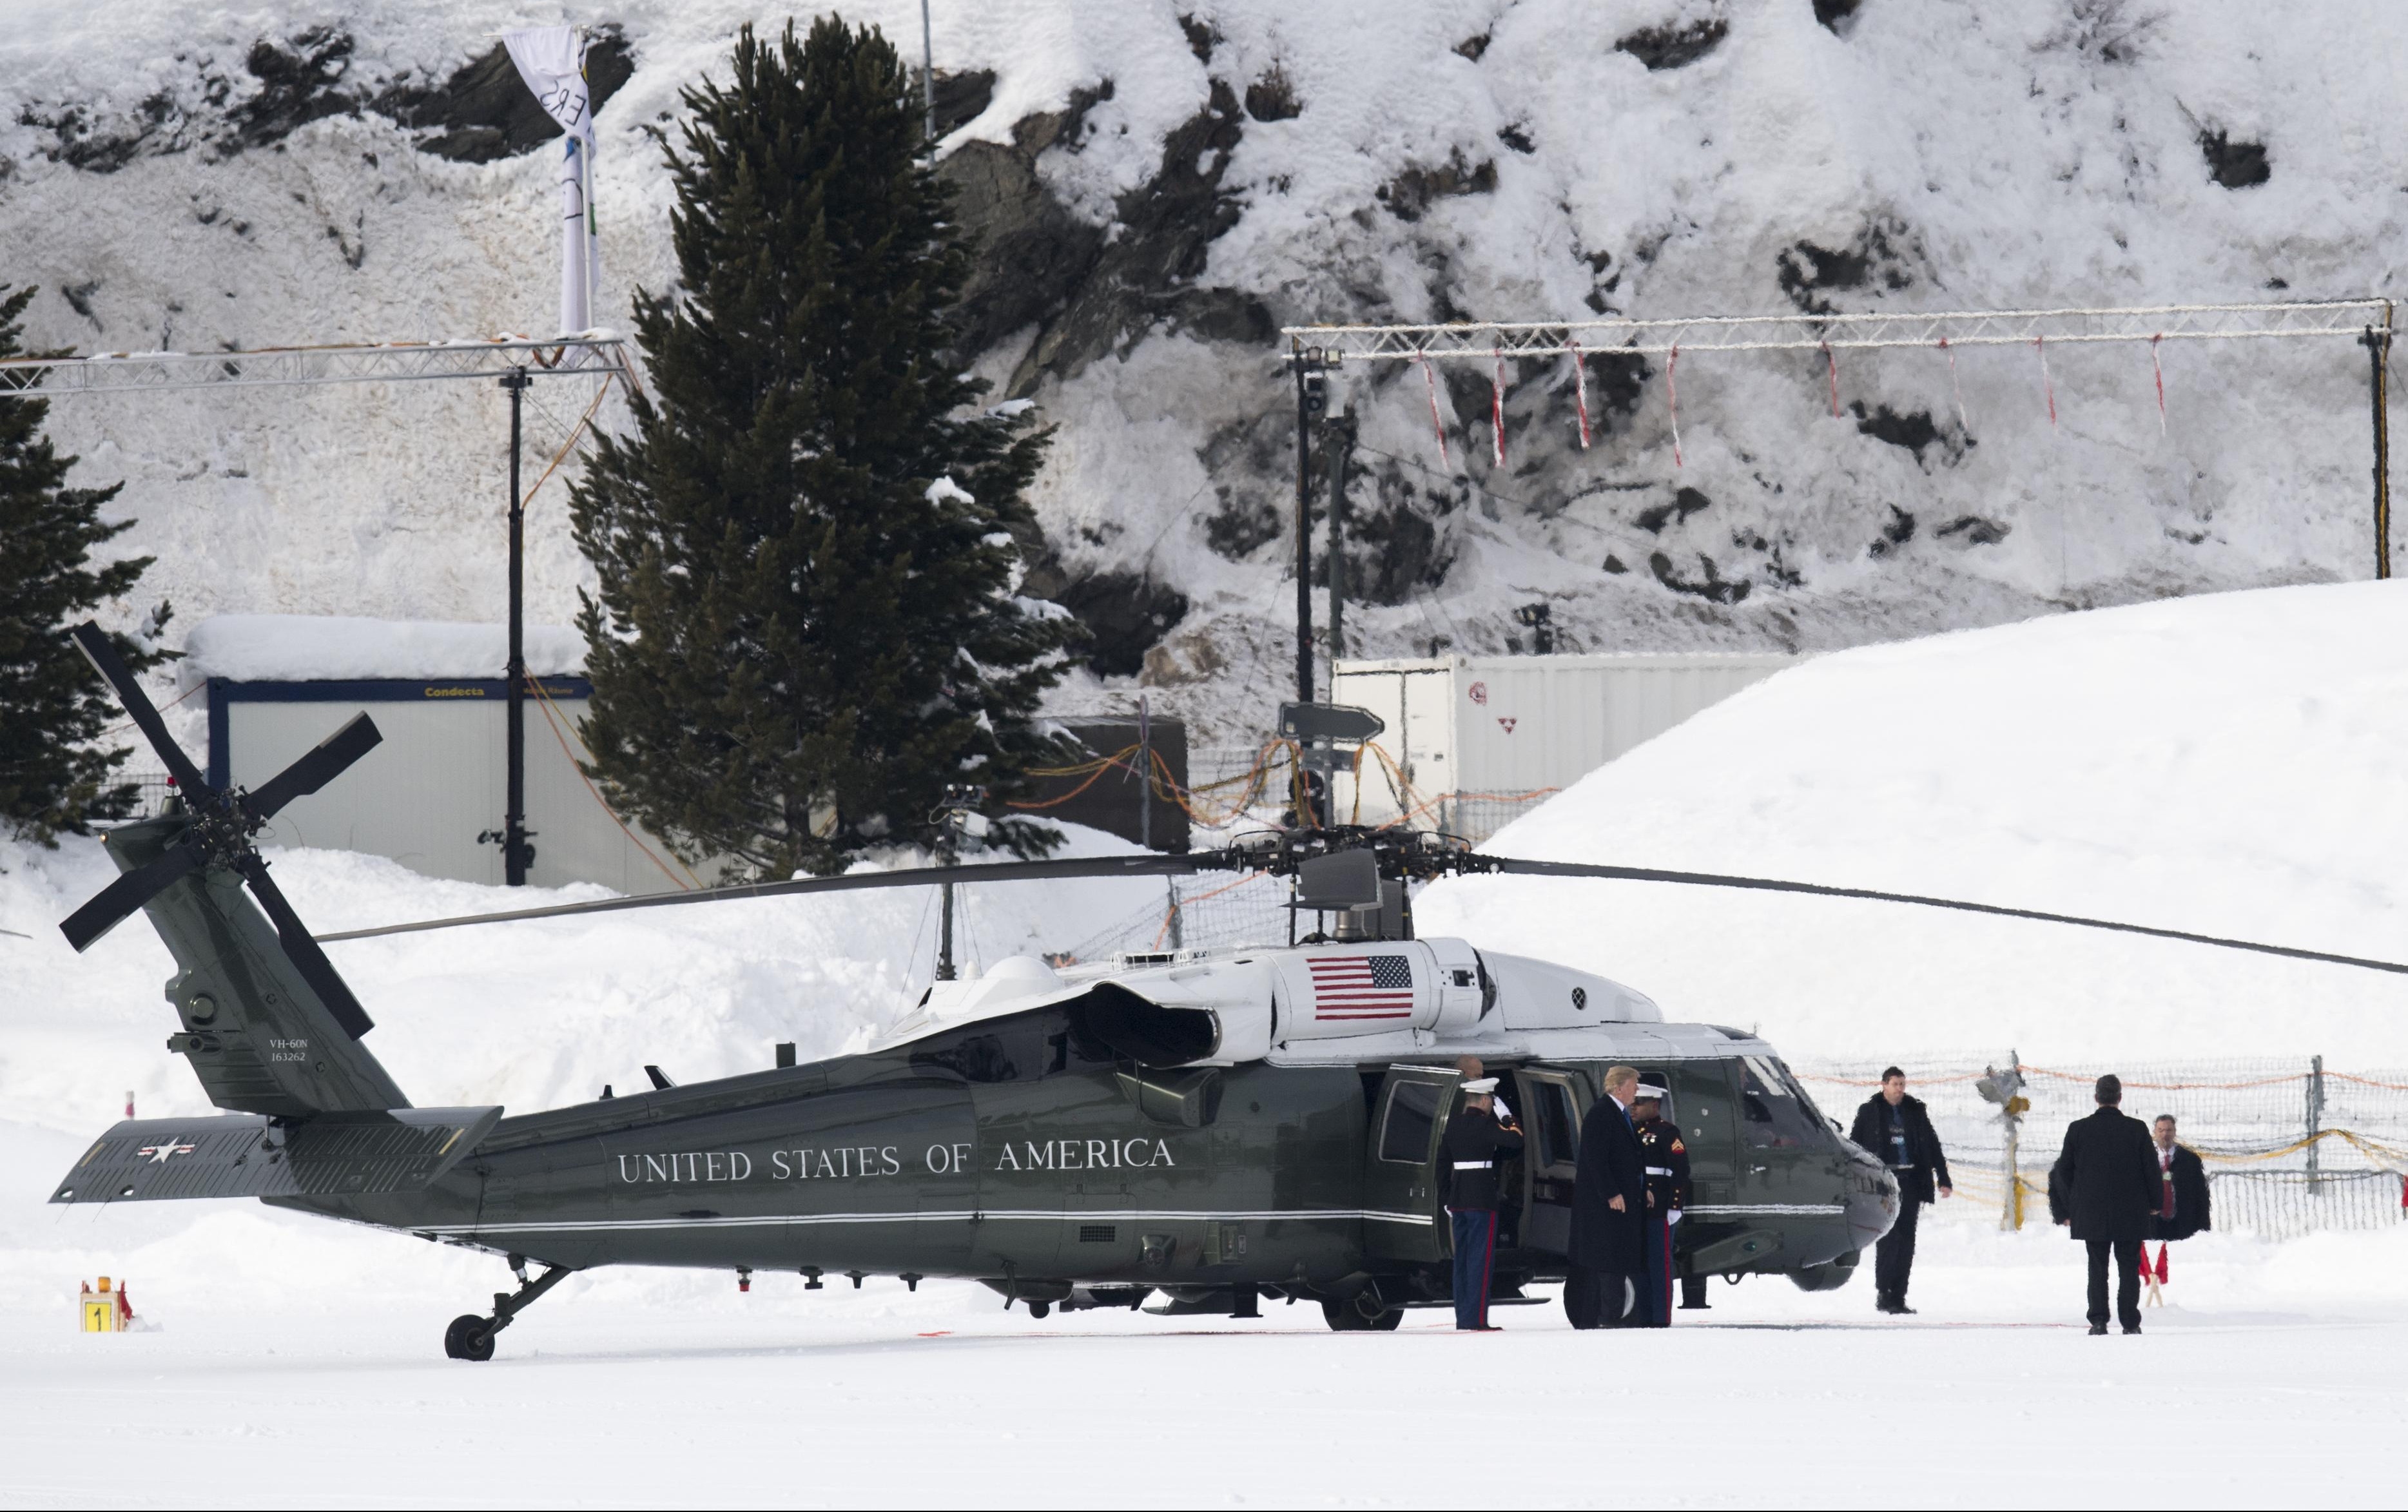 (FOTO) TRAMP STIGAO U DAVOS! Došao helikopterom, na večeri okuplja BIZNISMENE!